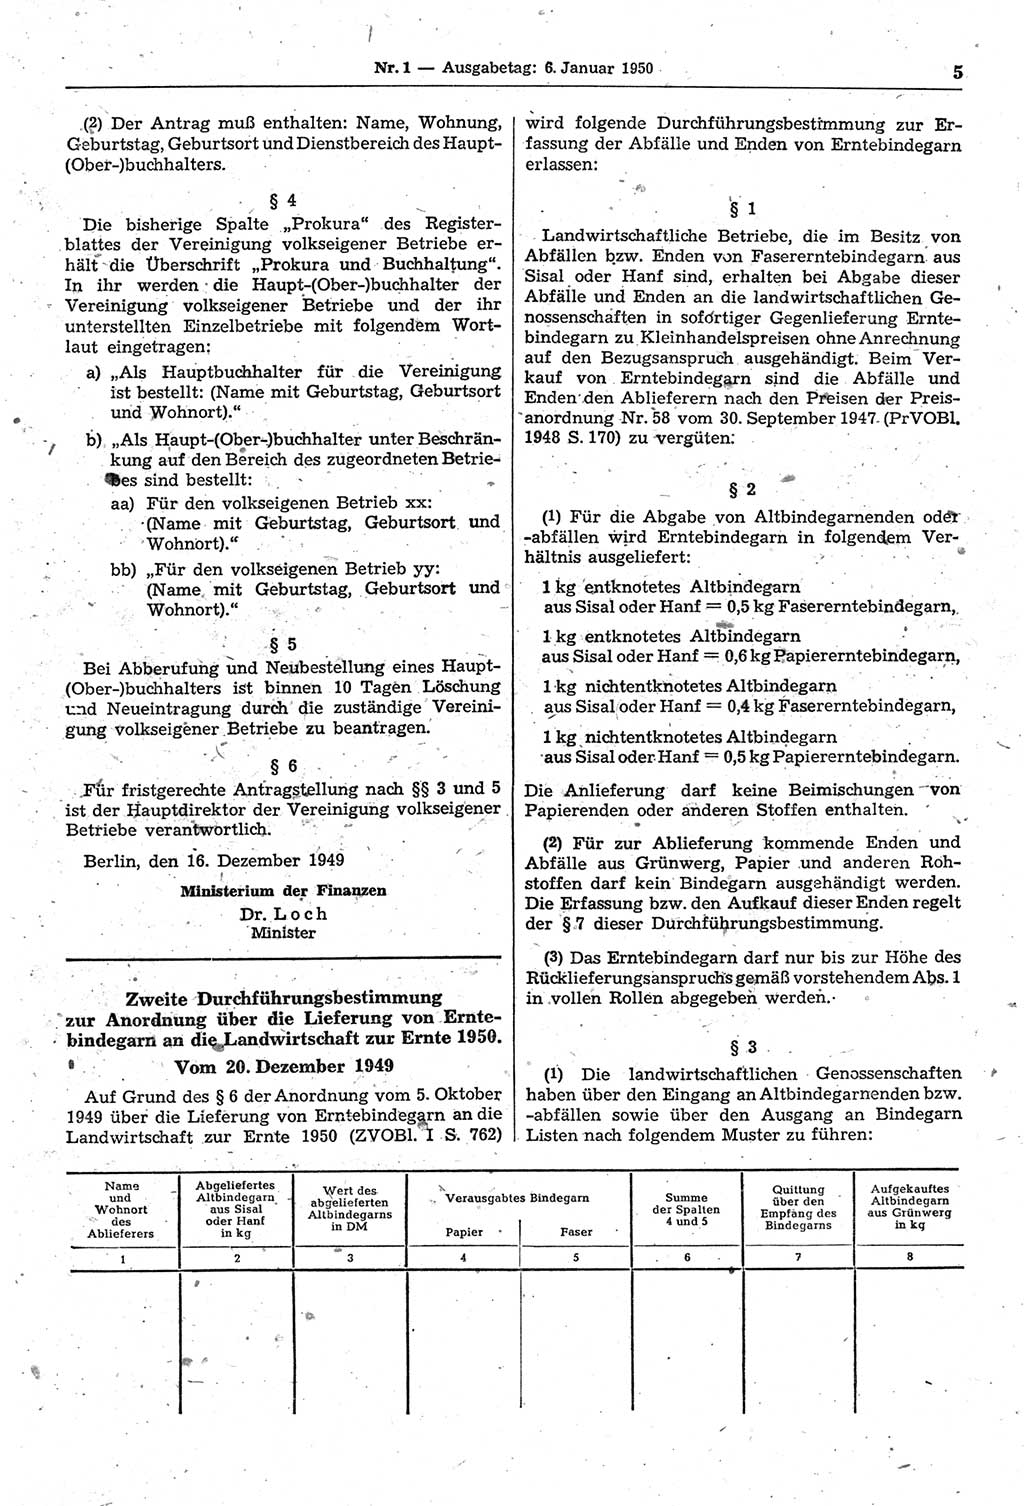 Gesetzblatt (GBl.) der Deutschen Demokratischen Republik (DDR) 1950, Seite 5 (GBl. DDR 1950, S. 5)